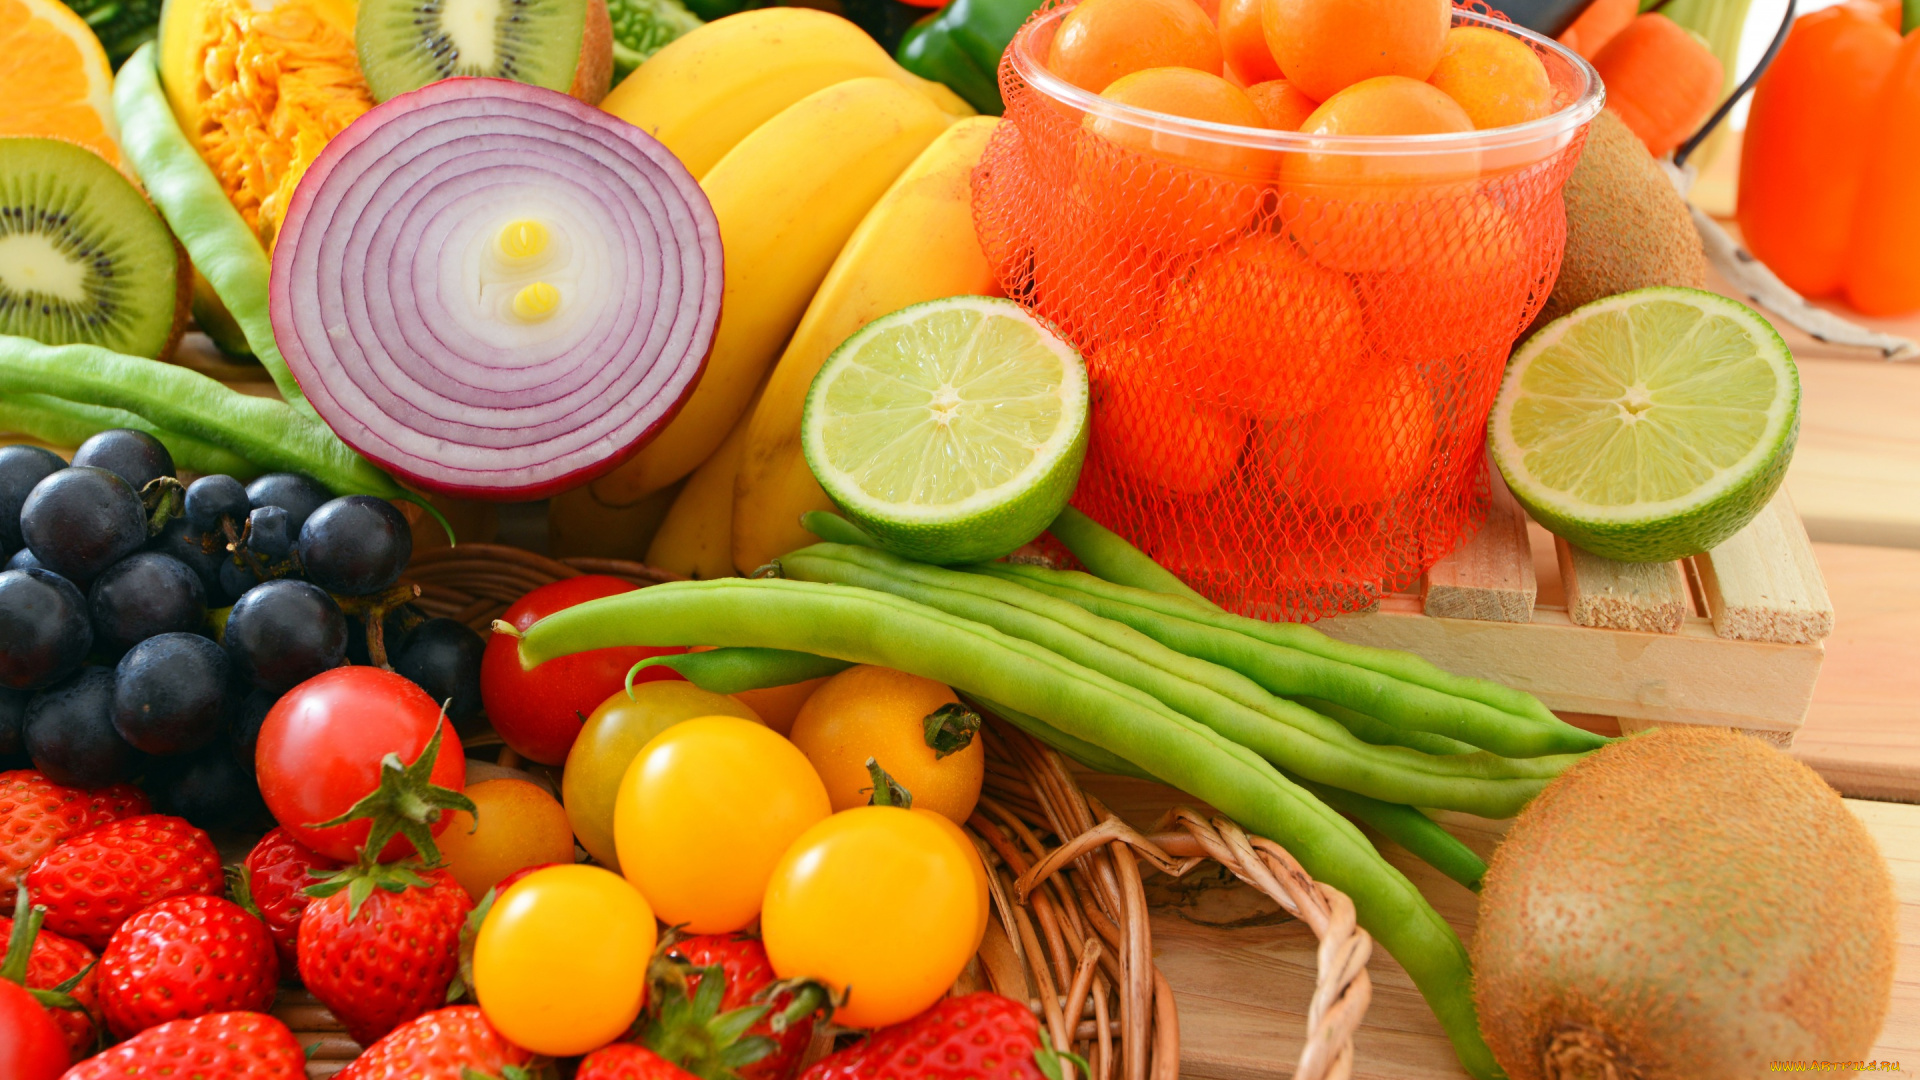 еда, фрукты, и, овощи, вместе, виноград, клубника, помидоры, мандарины, киви, лук